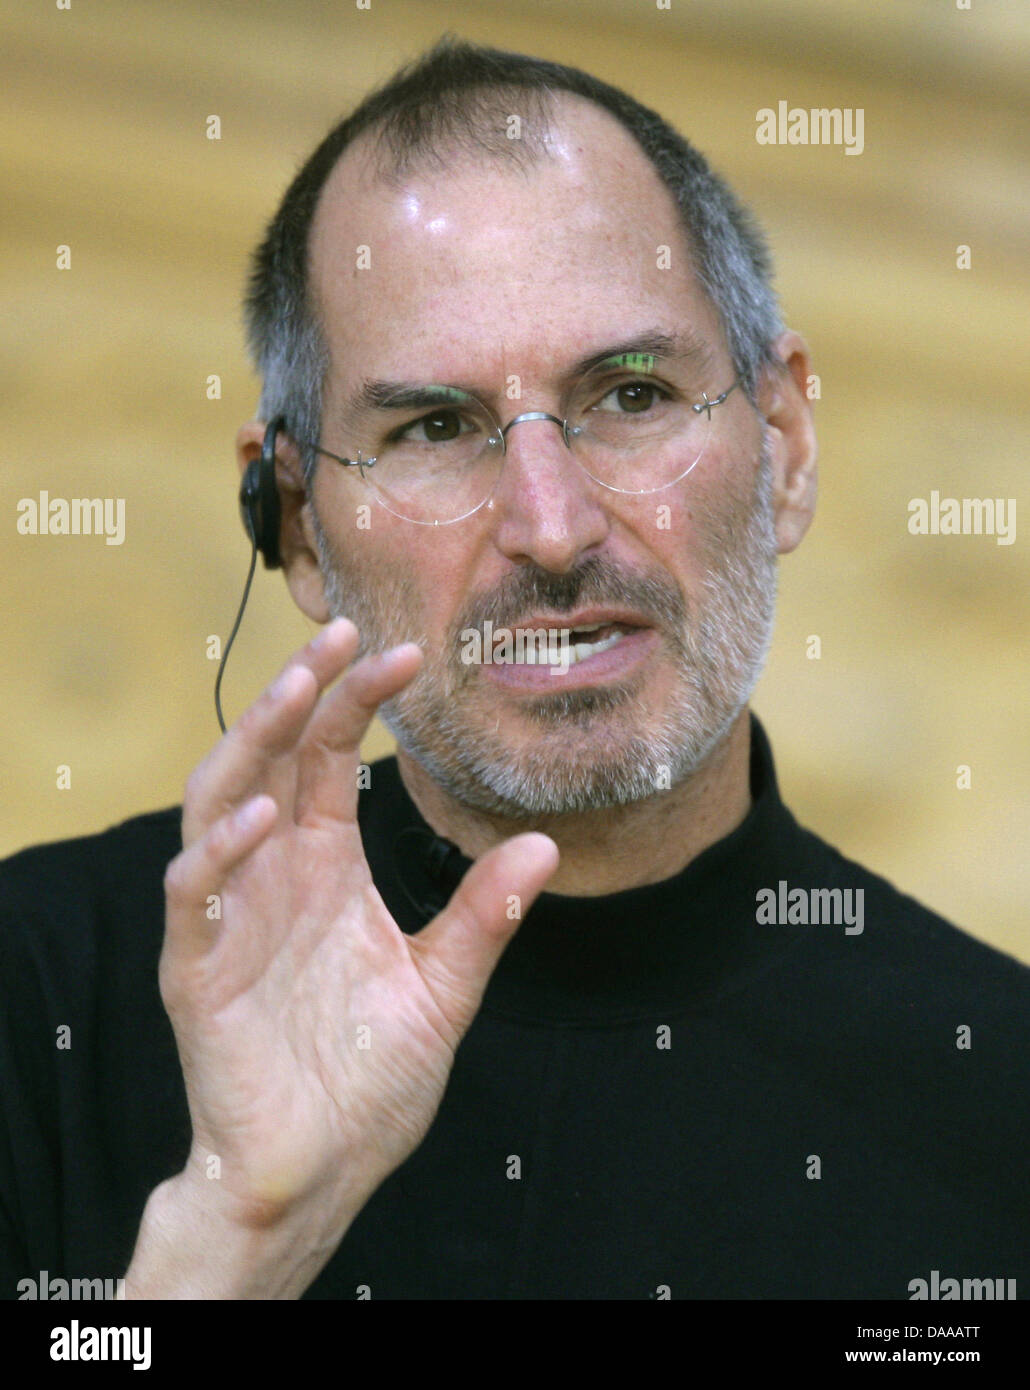 Un fichier photo datée du 19 septembre 2007 montre le propriétaire d'Apple, Steve Jobs. Emplois auront à réduire le travail en raison de la mauvaise santé. Le conseil d'administration lui avait permis de prendre un congé, a déclaré que l'emploi, le 17 janvier. Il veut demeurer chef de l'entreprise et rester impliqués dans tous les processus de décision importants. Il n'a pas raisons nom ou un laps de temps prévu pour son temps libre. Photo : Peer Banque D'Images